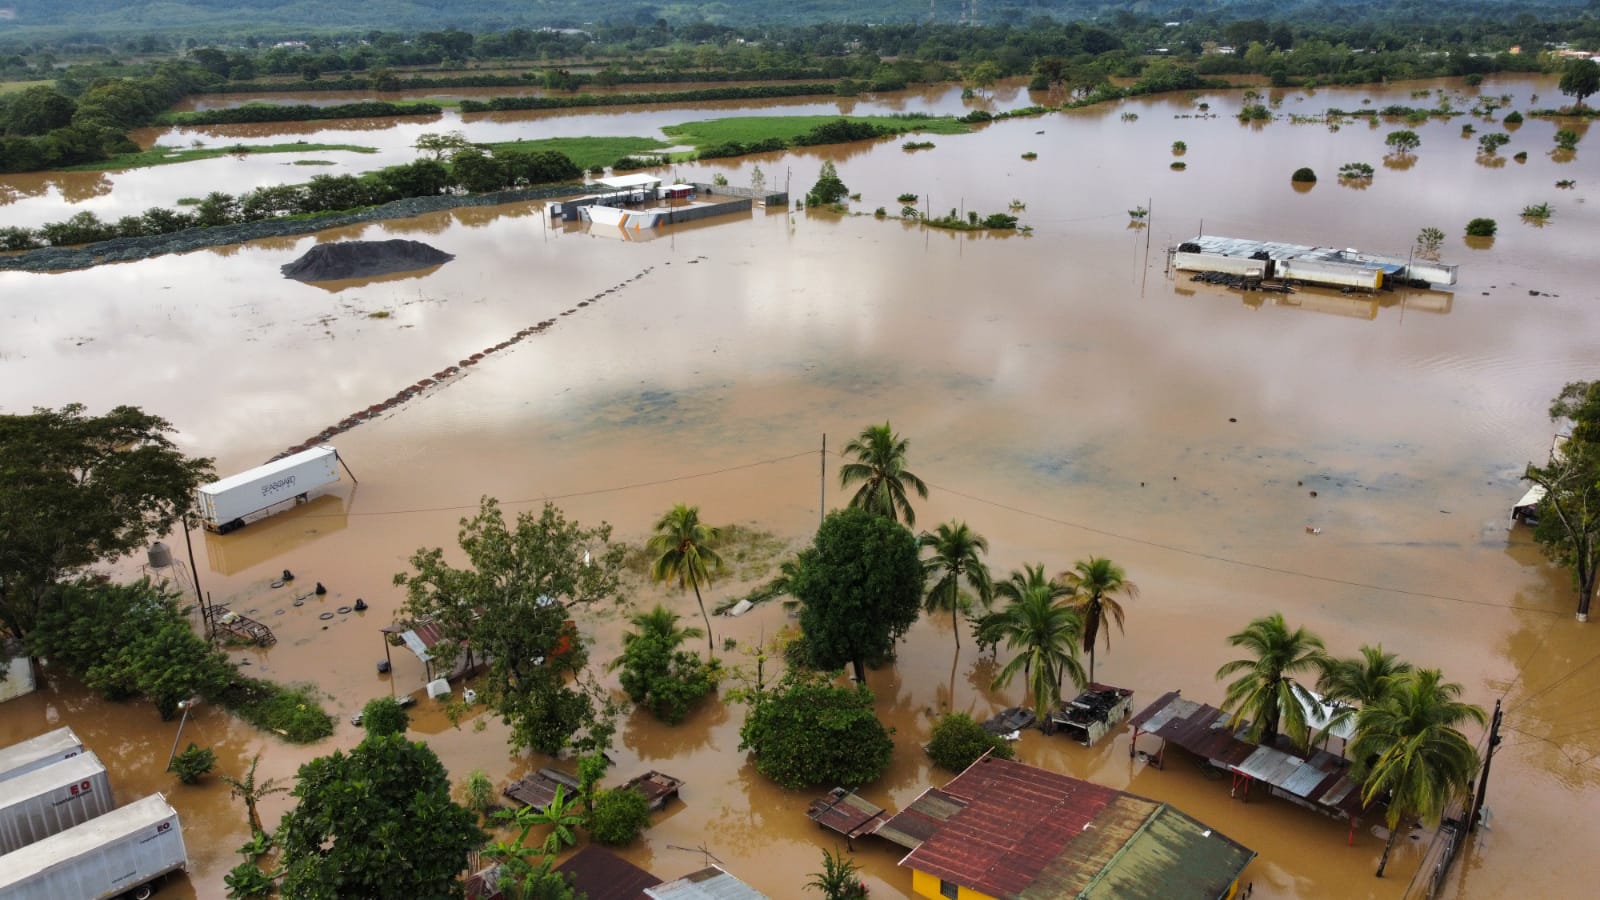 La infraestructura y el sector agrícola han sido los más afectados por el paso de la tormenta tropical Julia. (Foto Prensa Libre: Esbin García).